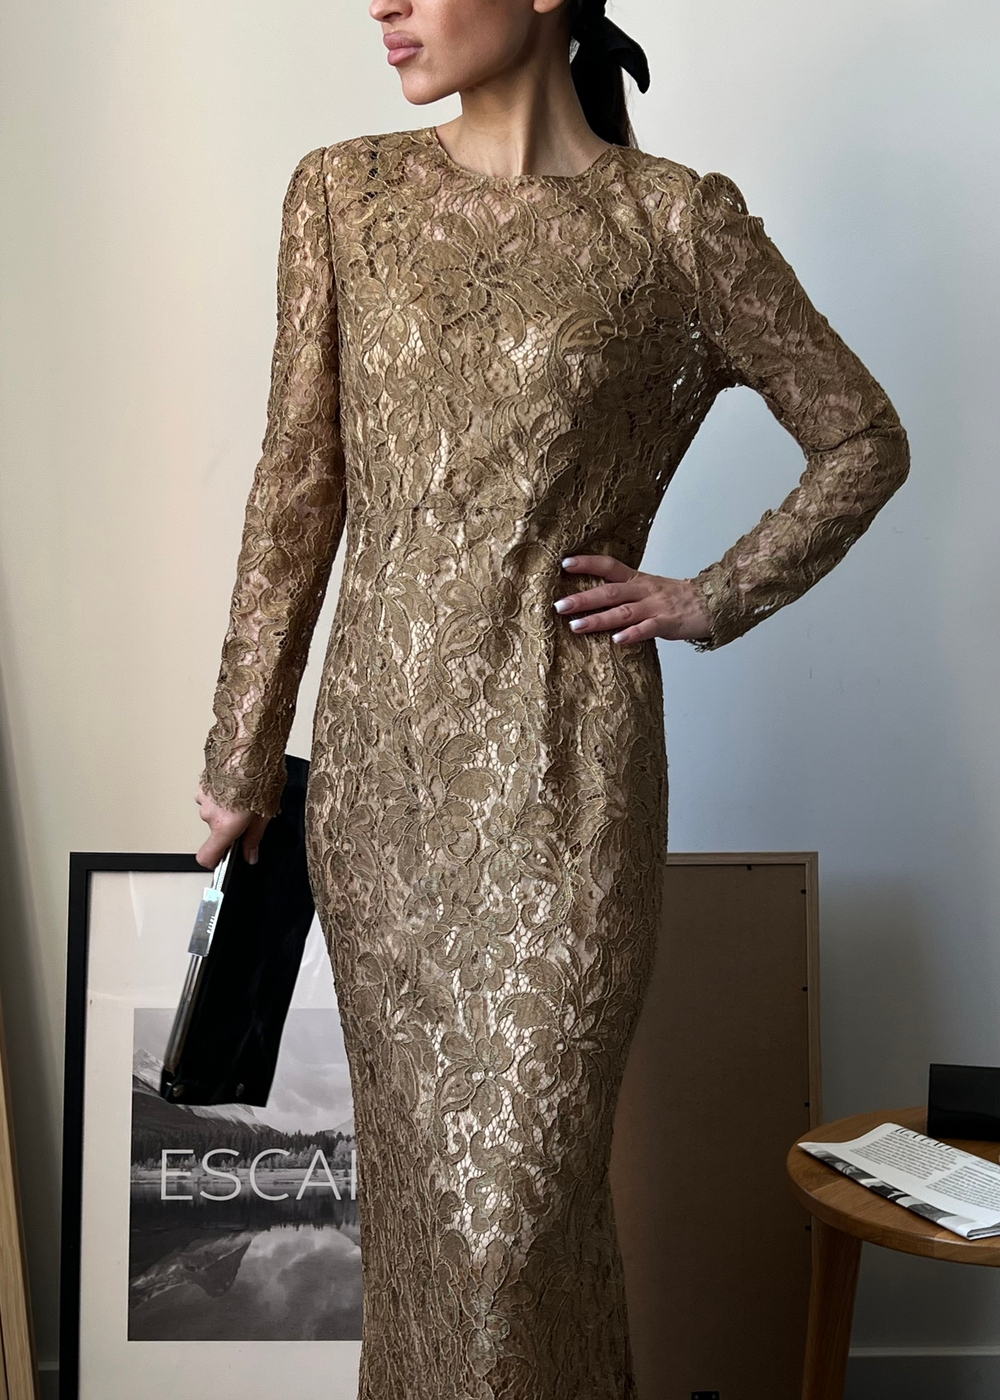 Кружевное платье Dolce&Gabbana, S/M